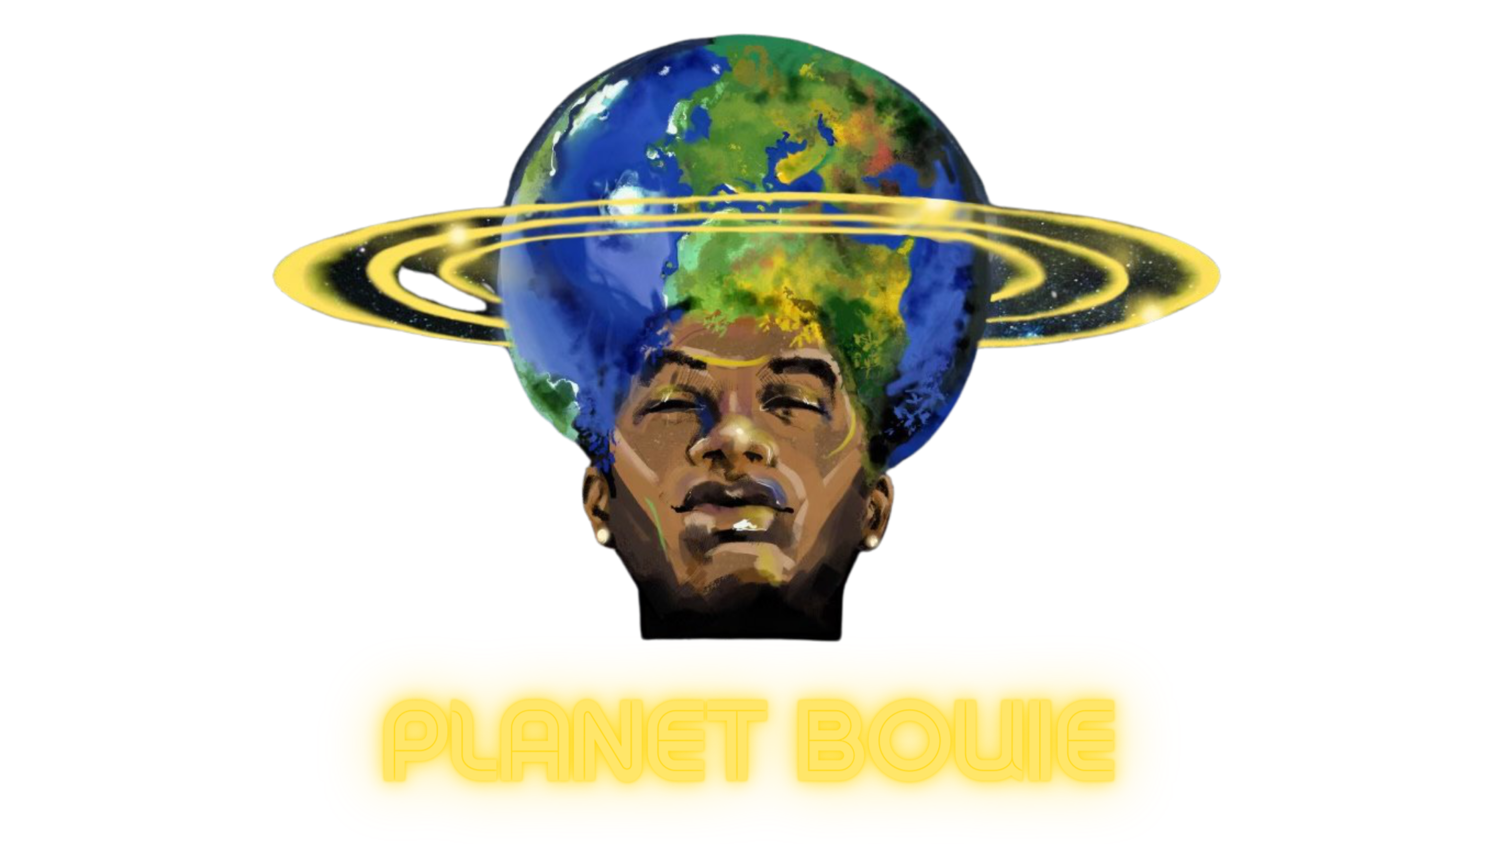 Planet Bouie